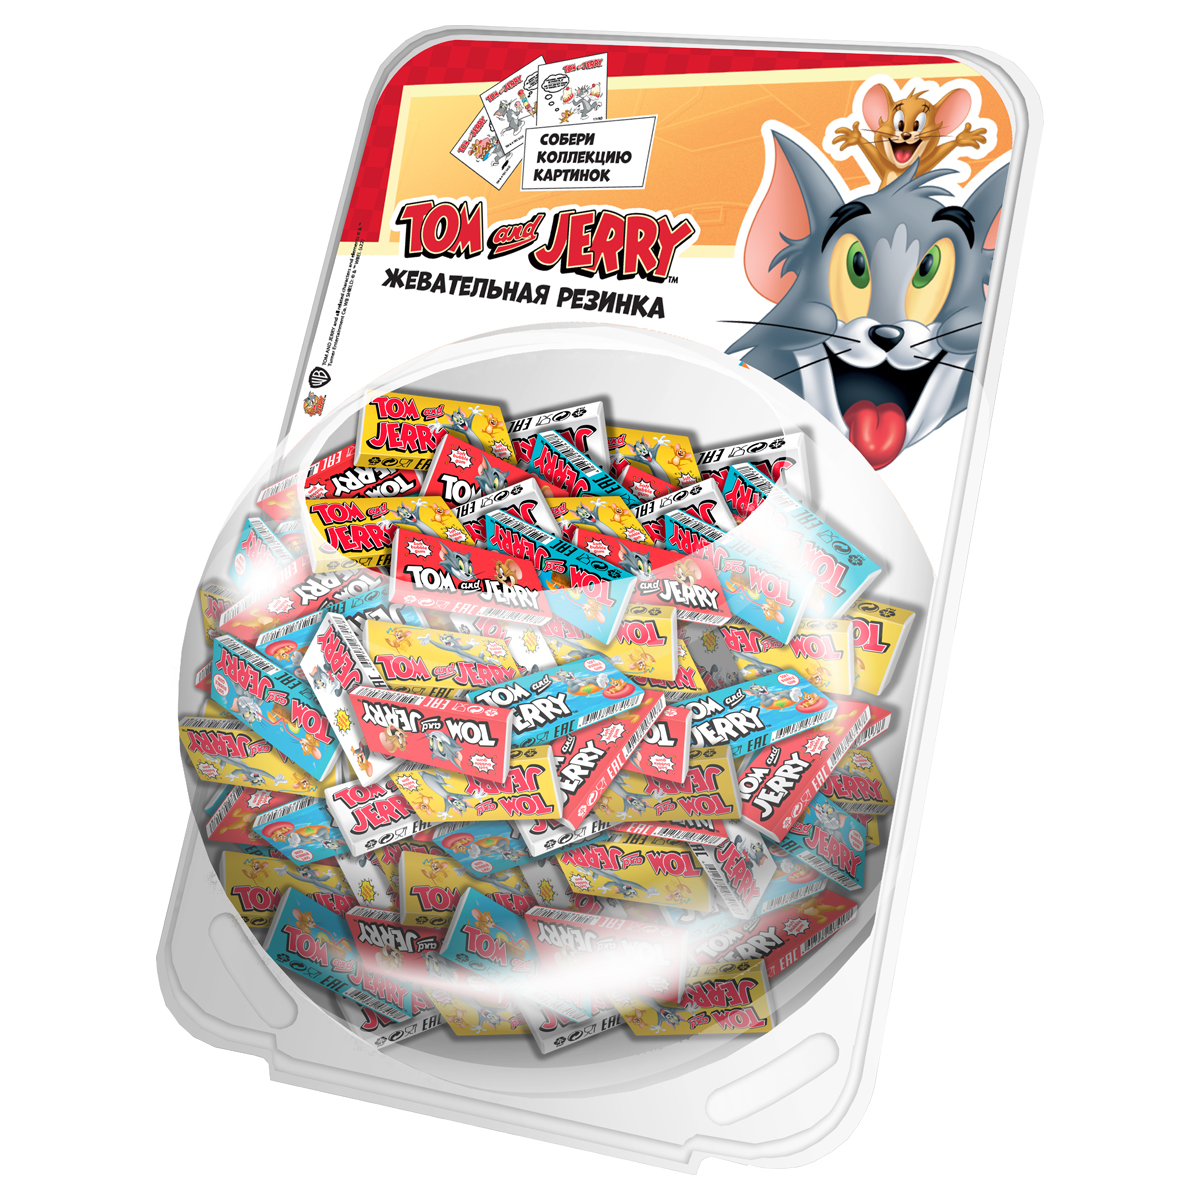 Жевательная резинка Tom&Jerry, микс вкус 4,5г. (упаковка сфера) 70847